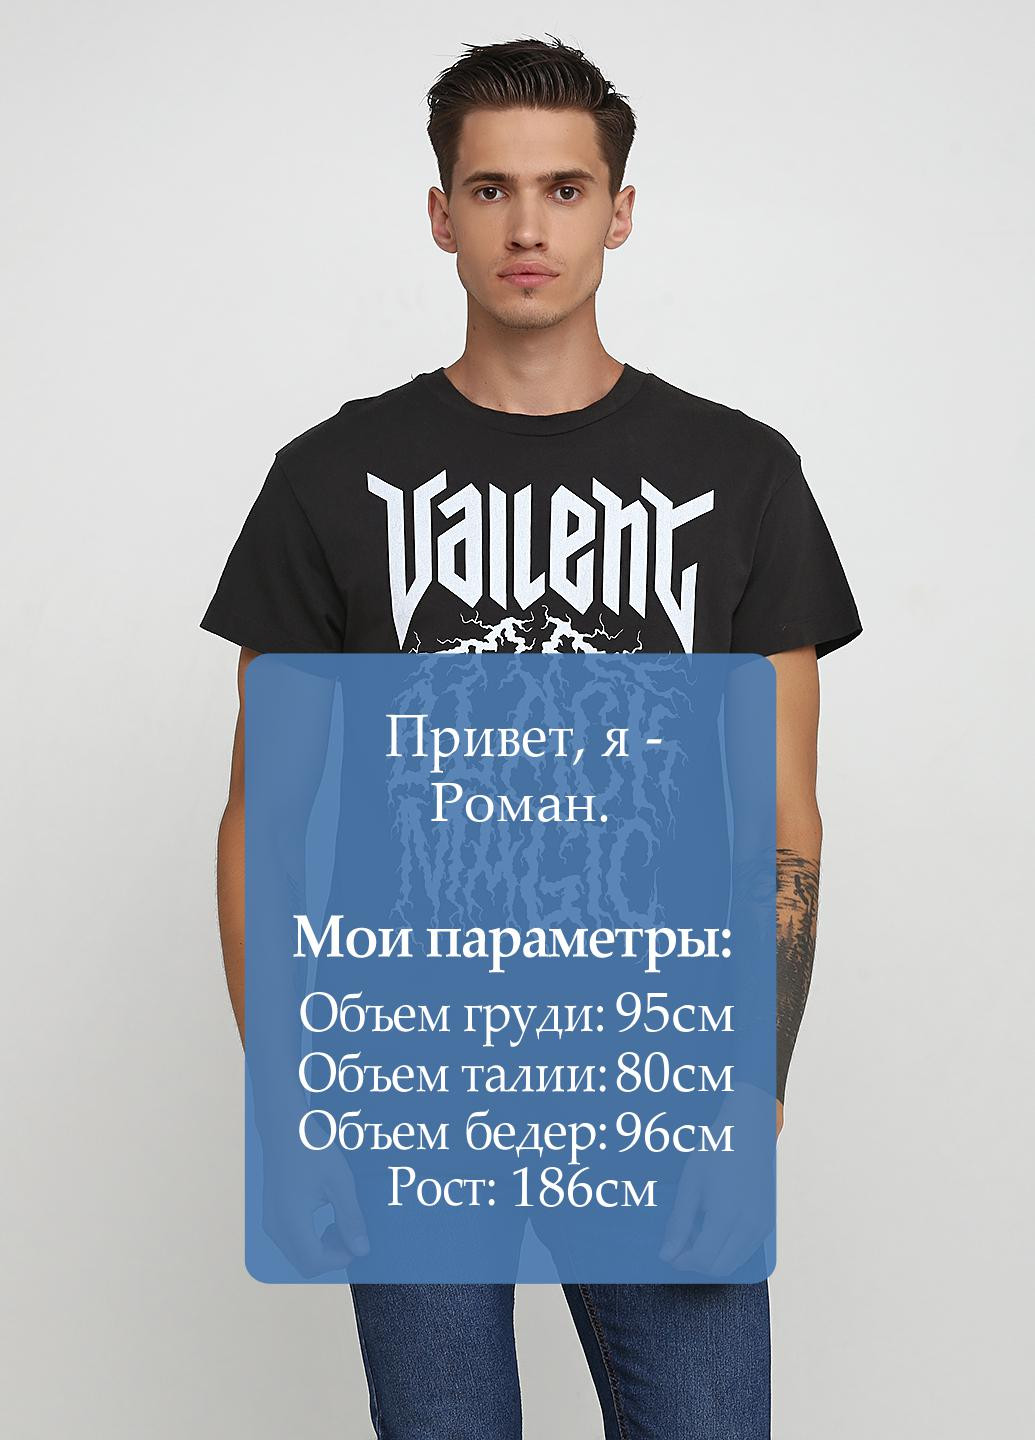 Черная футболка Vailent